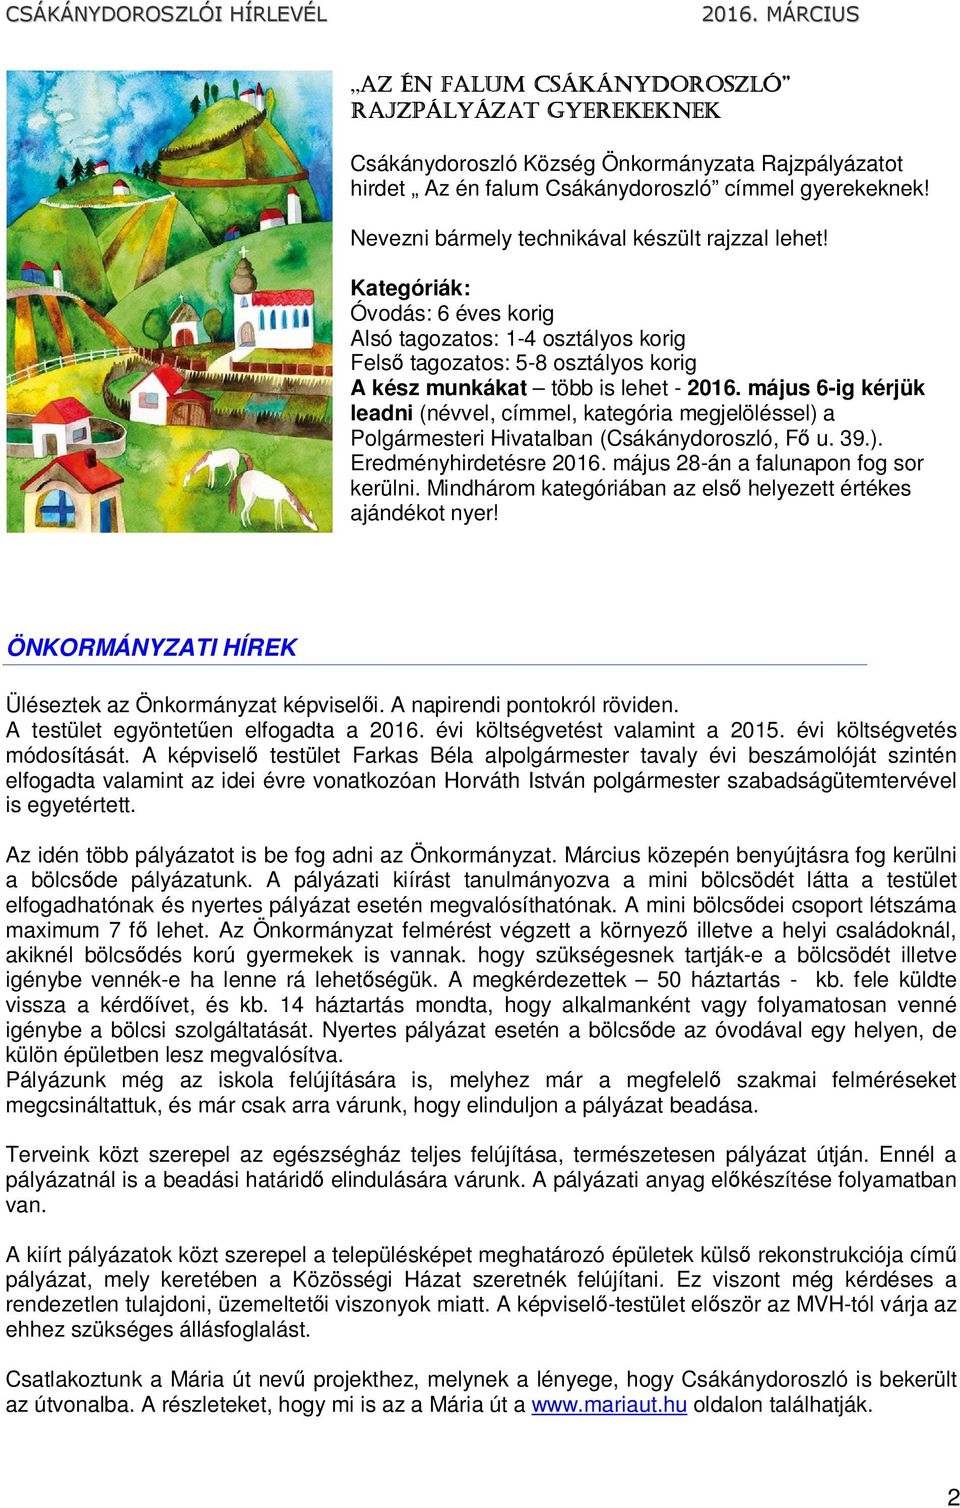 május 6-ig kérjük leadni (névvel, címmel, kategória megjelöléssel) a Polgármesteri Hivatalban (Csákánydoroszló, Fő u. 39.). Eredményhirdetésre 2016. május 28-án a falunapon fog sor kerülni.